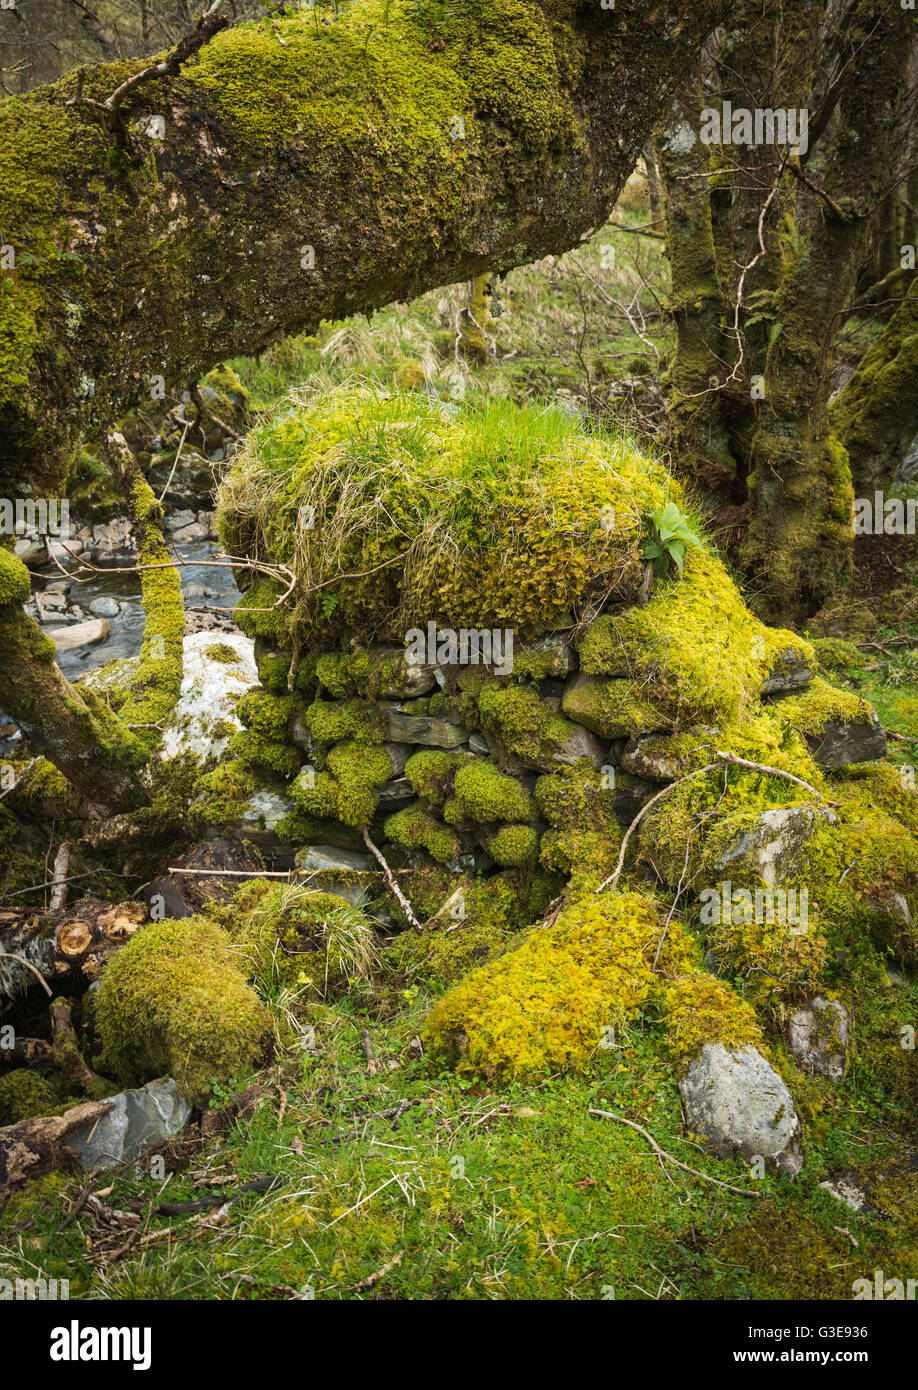 Coperte di muschio tronchi di alberi e pietre a secco a parete, Scottish glen, Highlands Occidentali Foto Stock